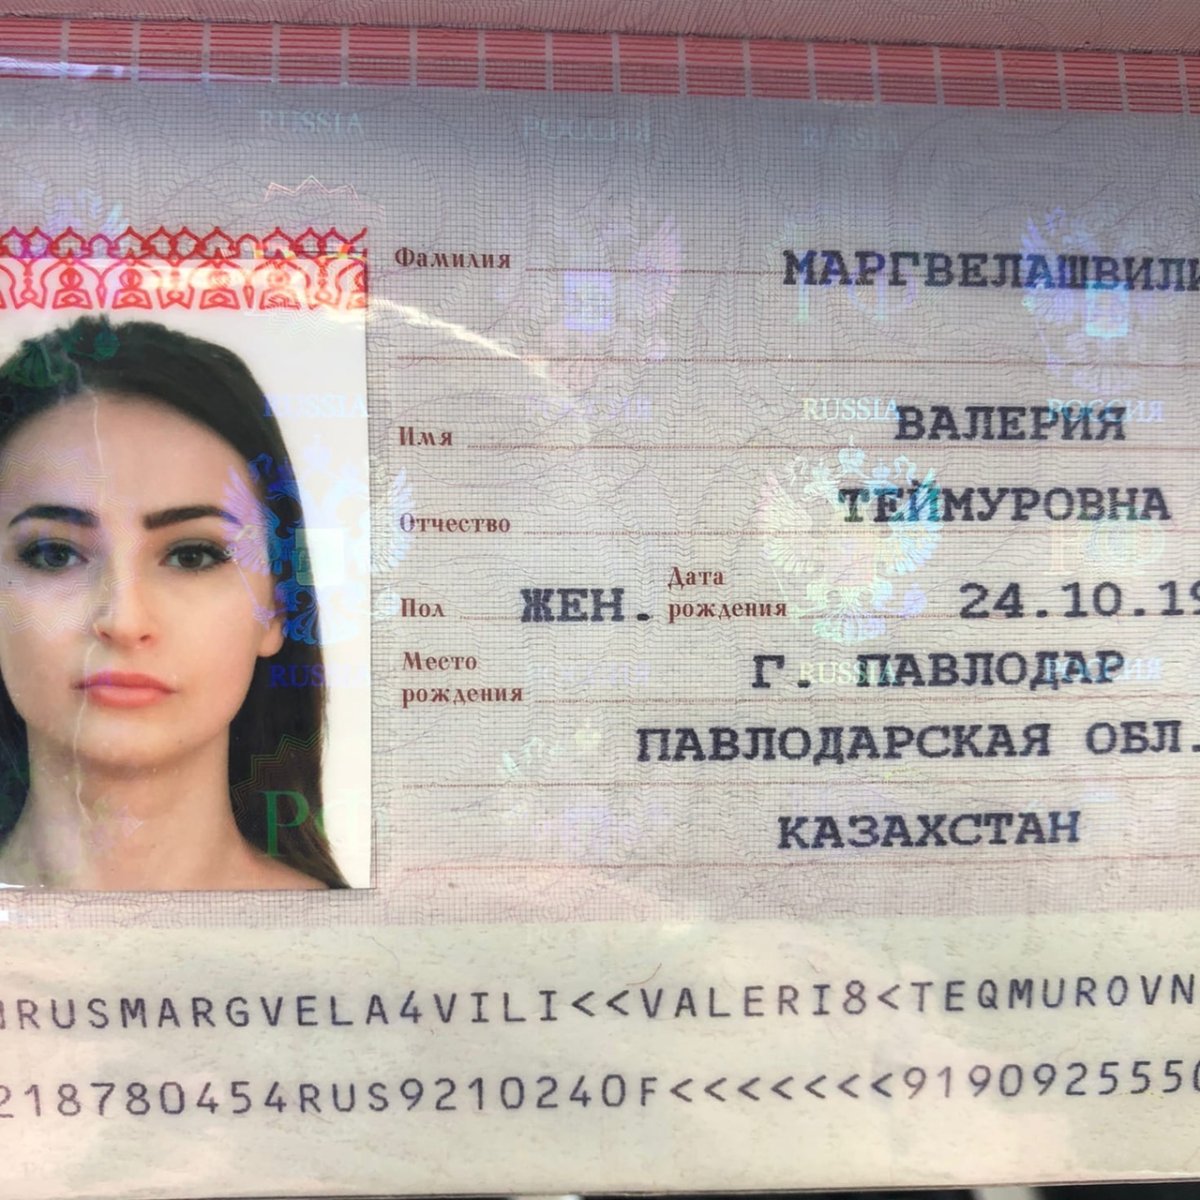 Паспорт на имя Валерия